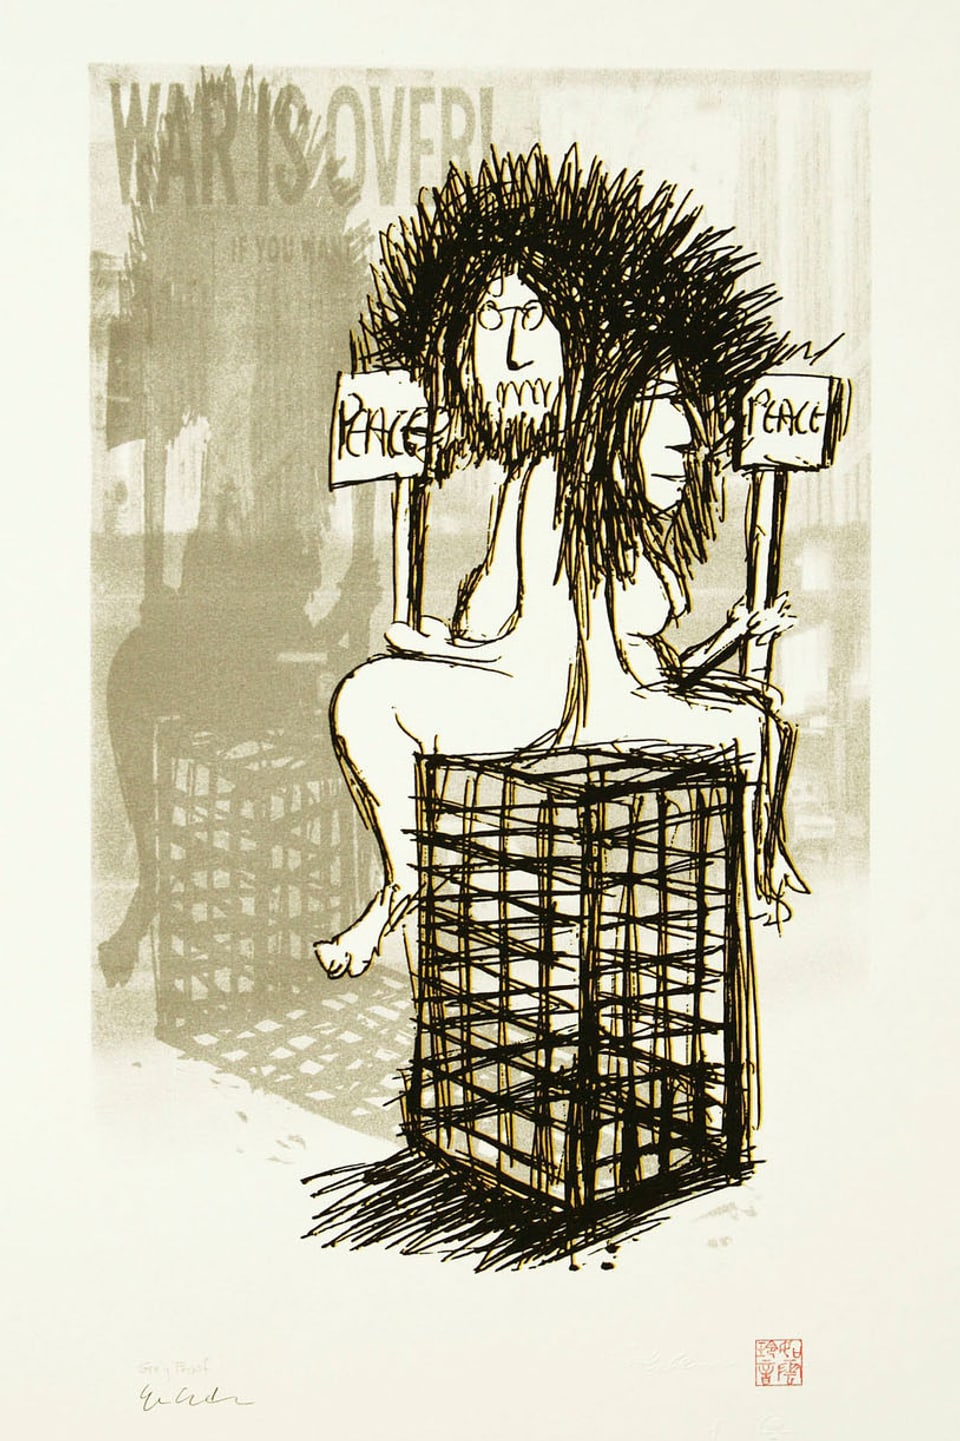 John Lennons Zeichnung «War is Over». Sie zeigt einen Mann und eine Frau auf einem Käfig sitzend, beide halten ein Schild mit der Aufschrift "Peace".